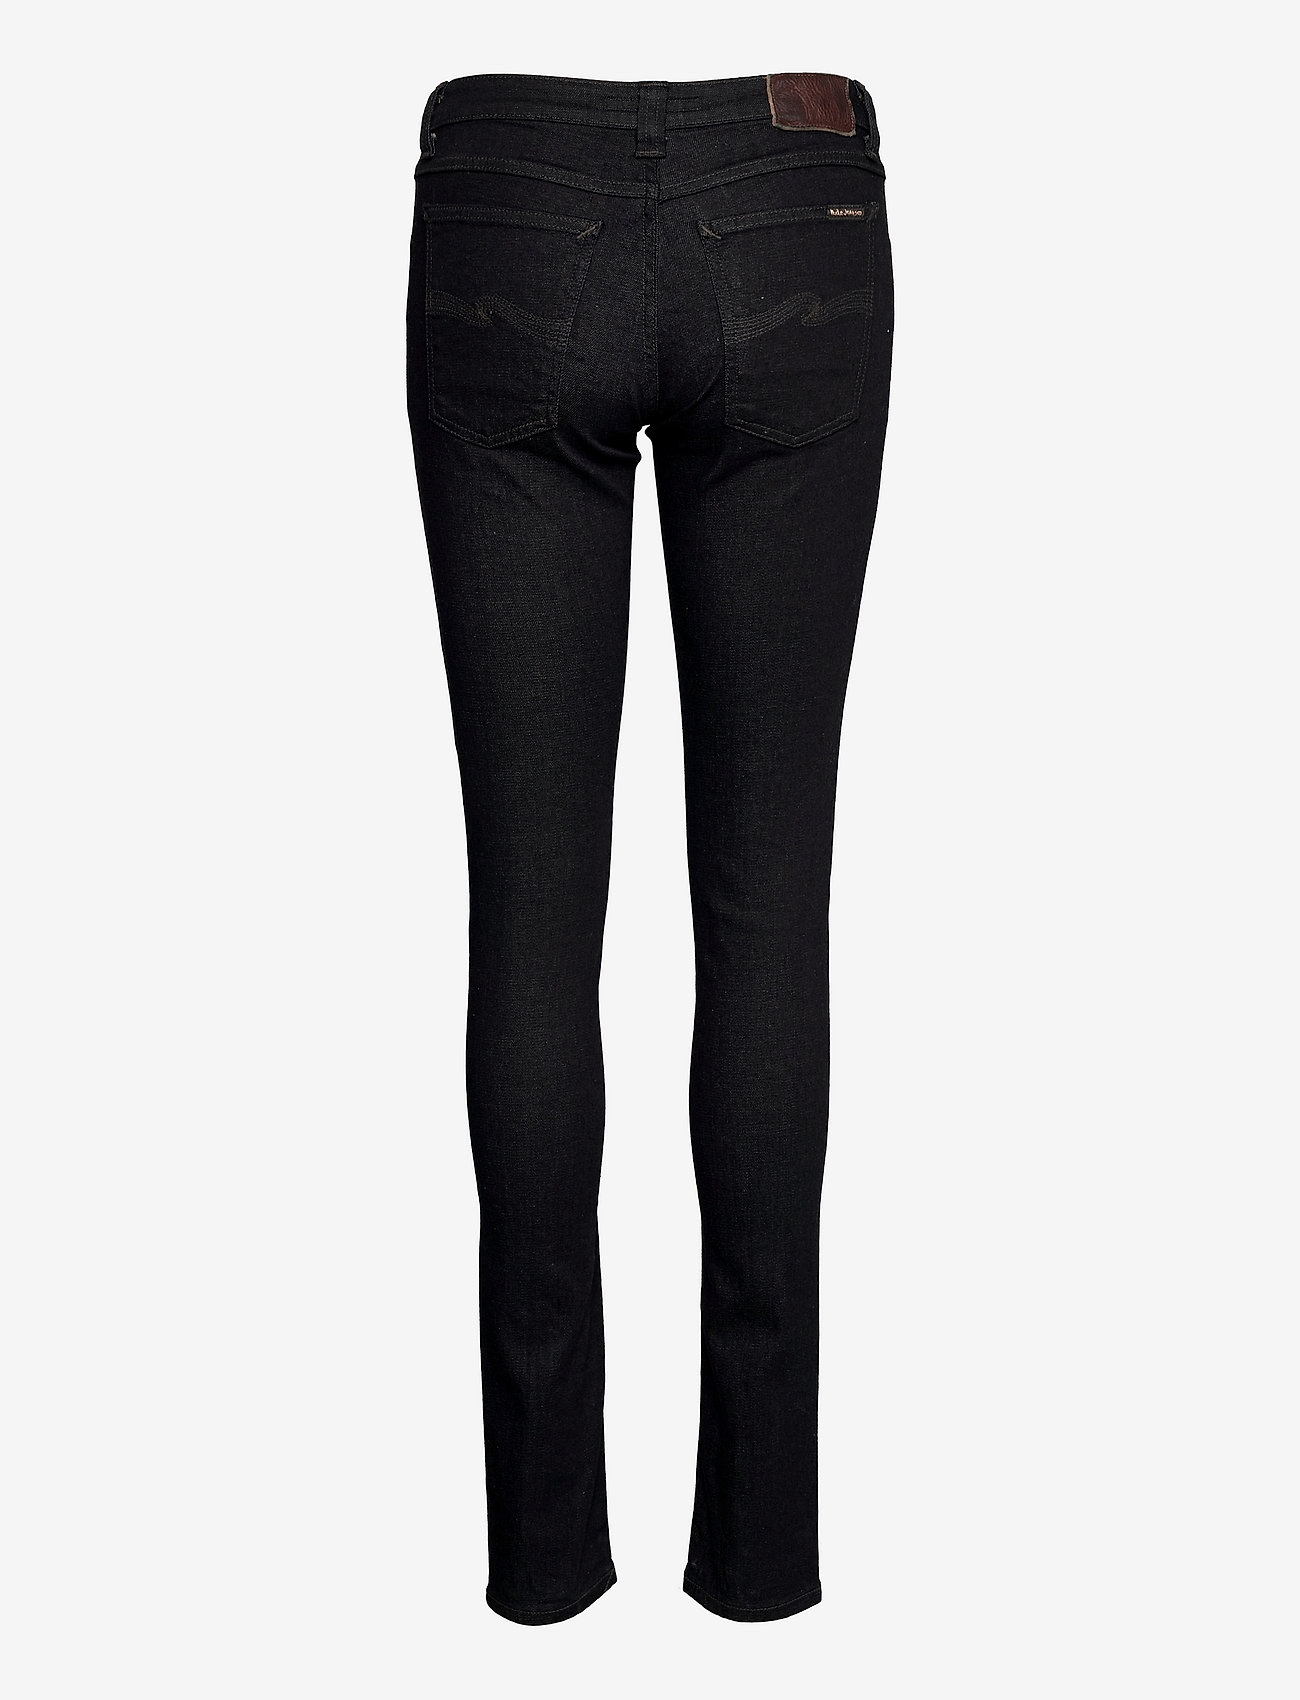 Nudie Jeans - Skinny Lin - skinny jeans - dry steel - 1